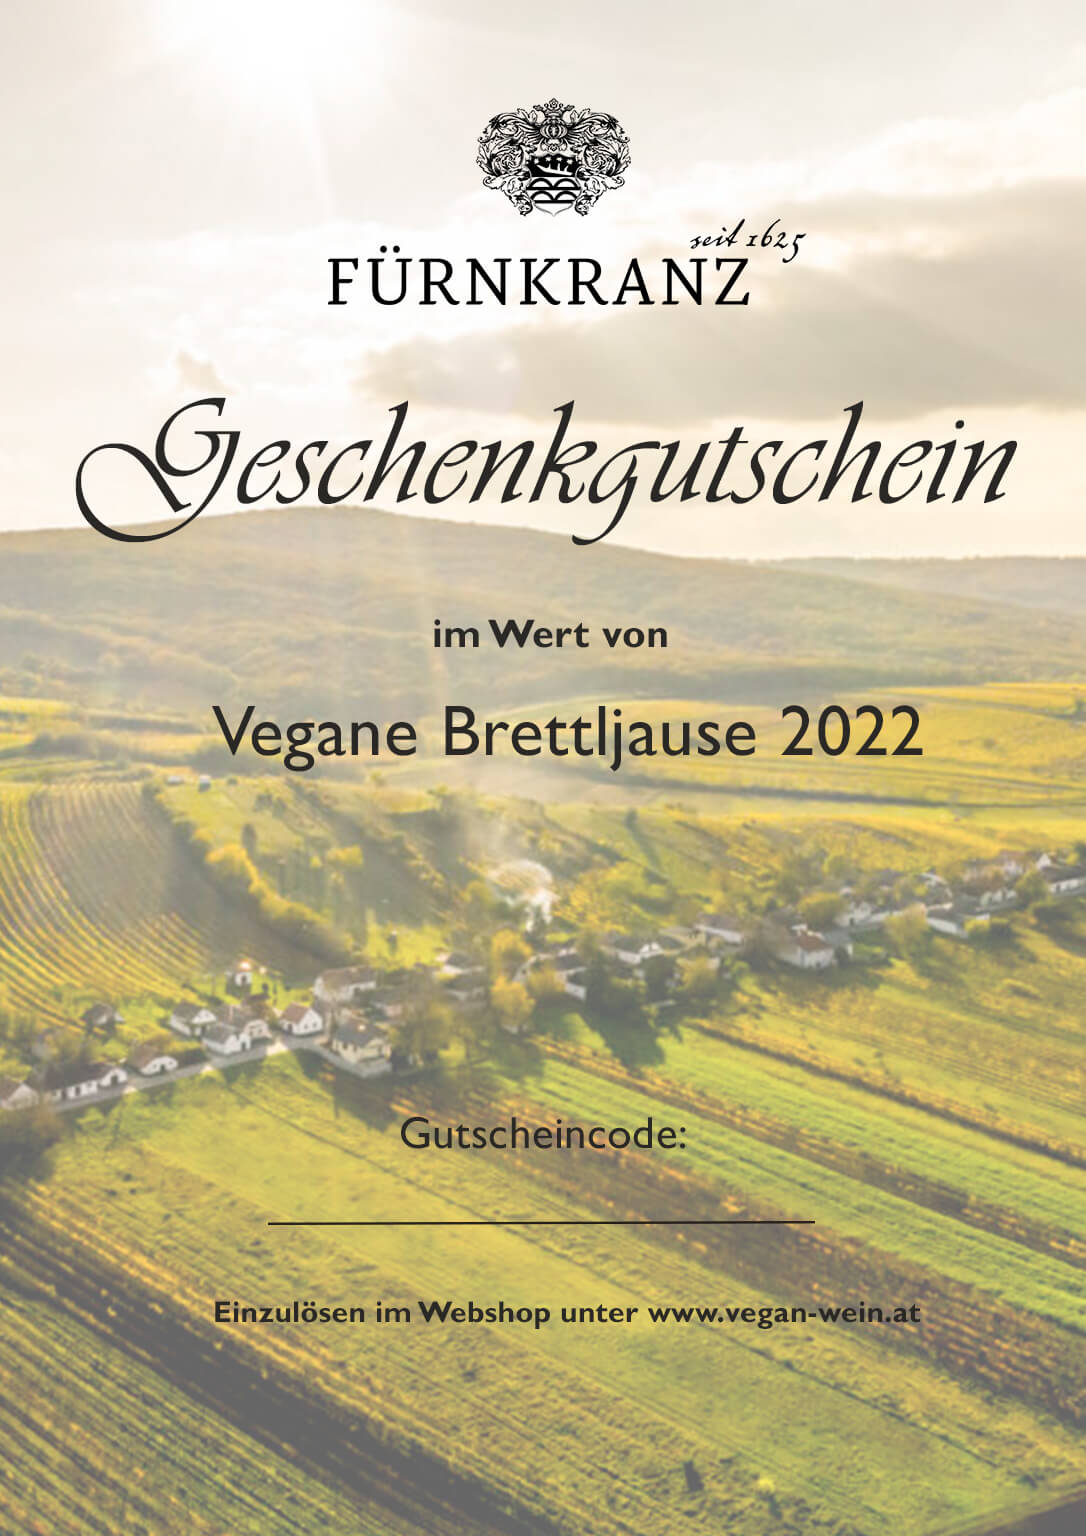 Geschnkgutschein Vegane Brettljause Weingut Fürnkranz 2022